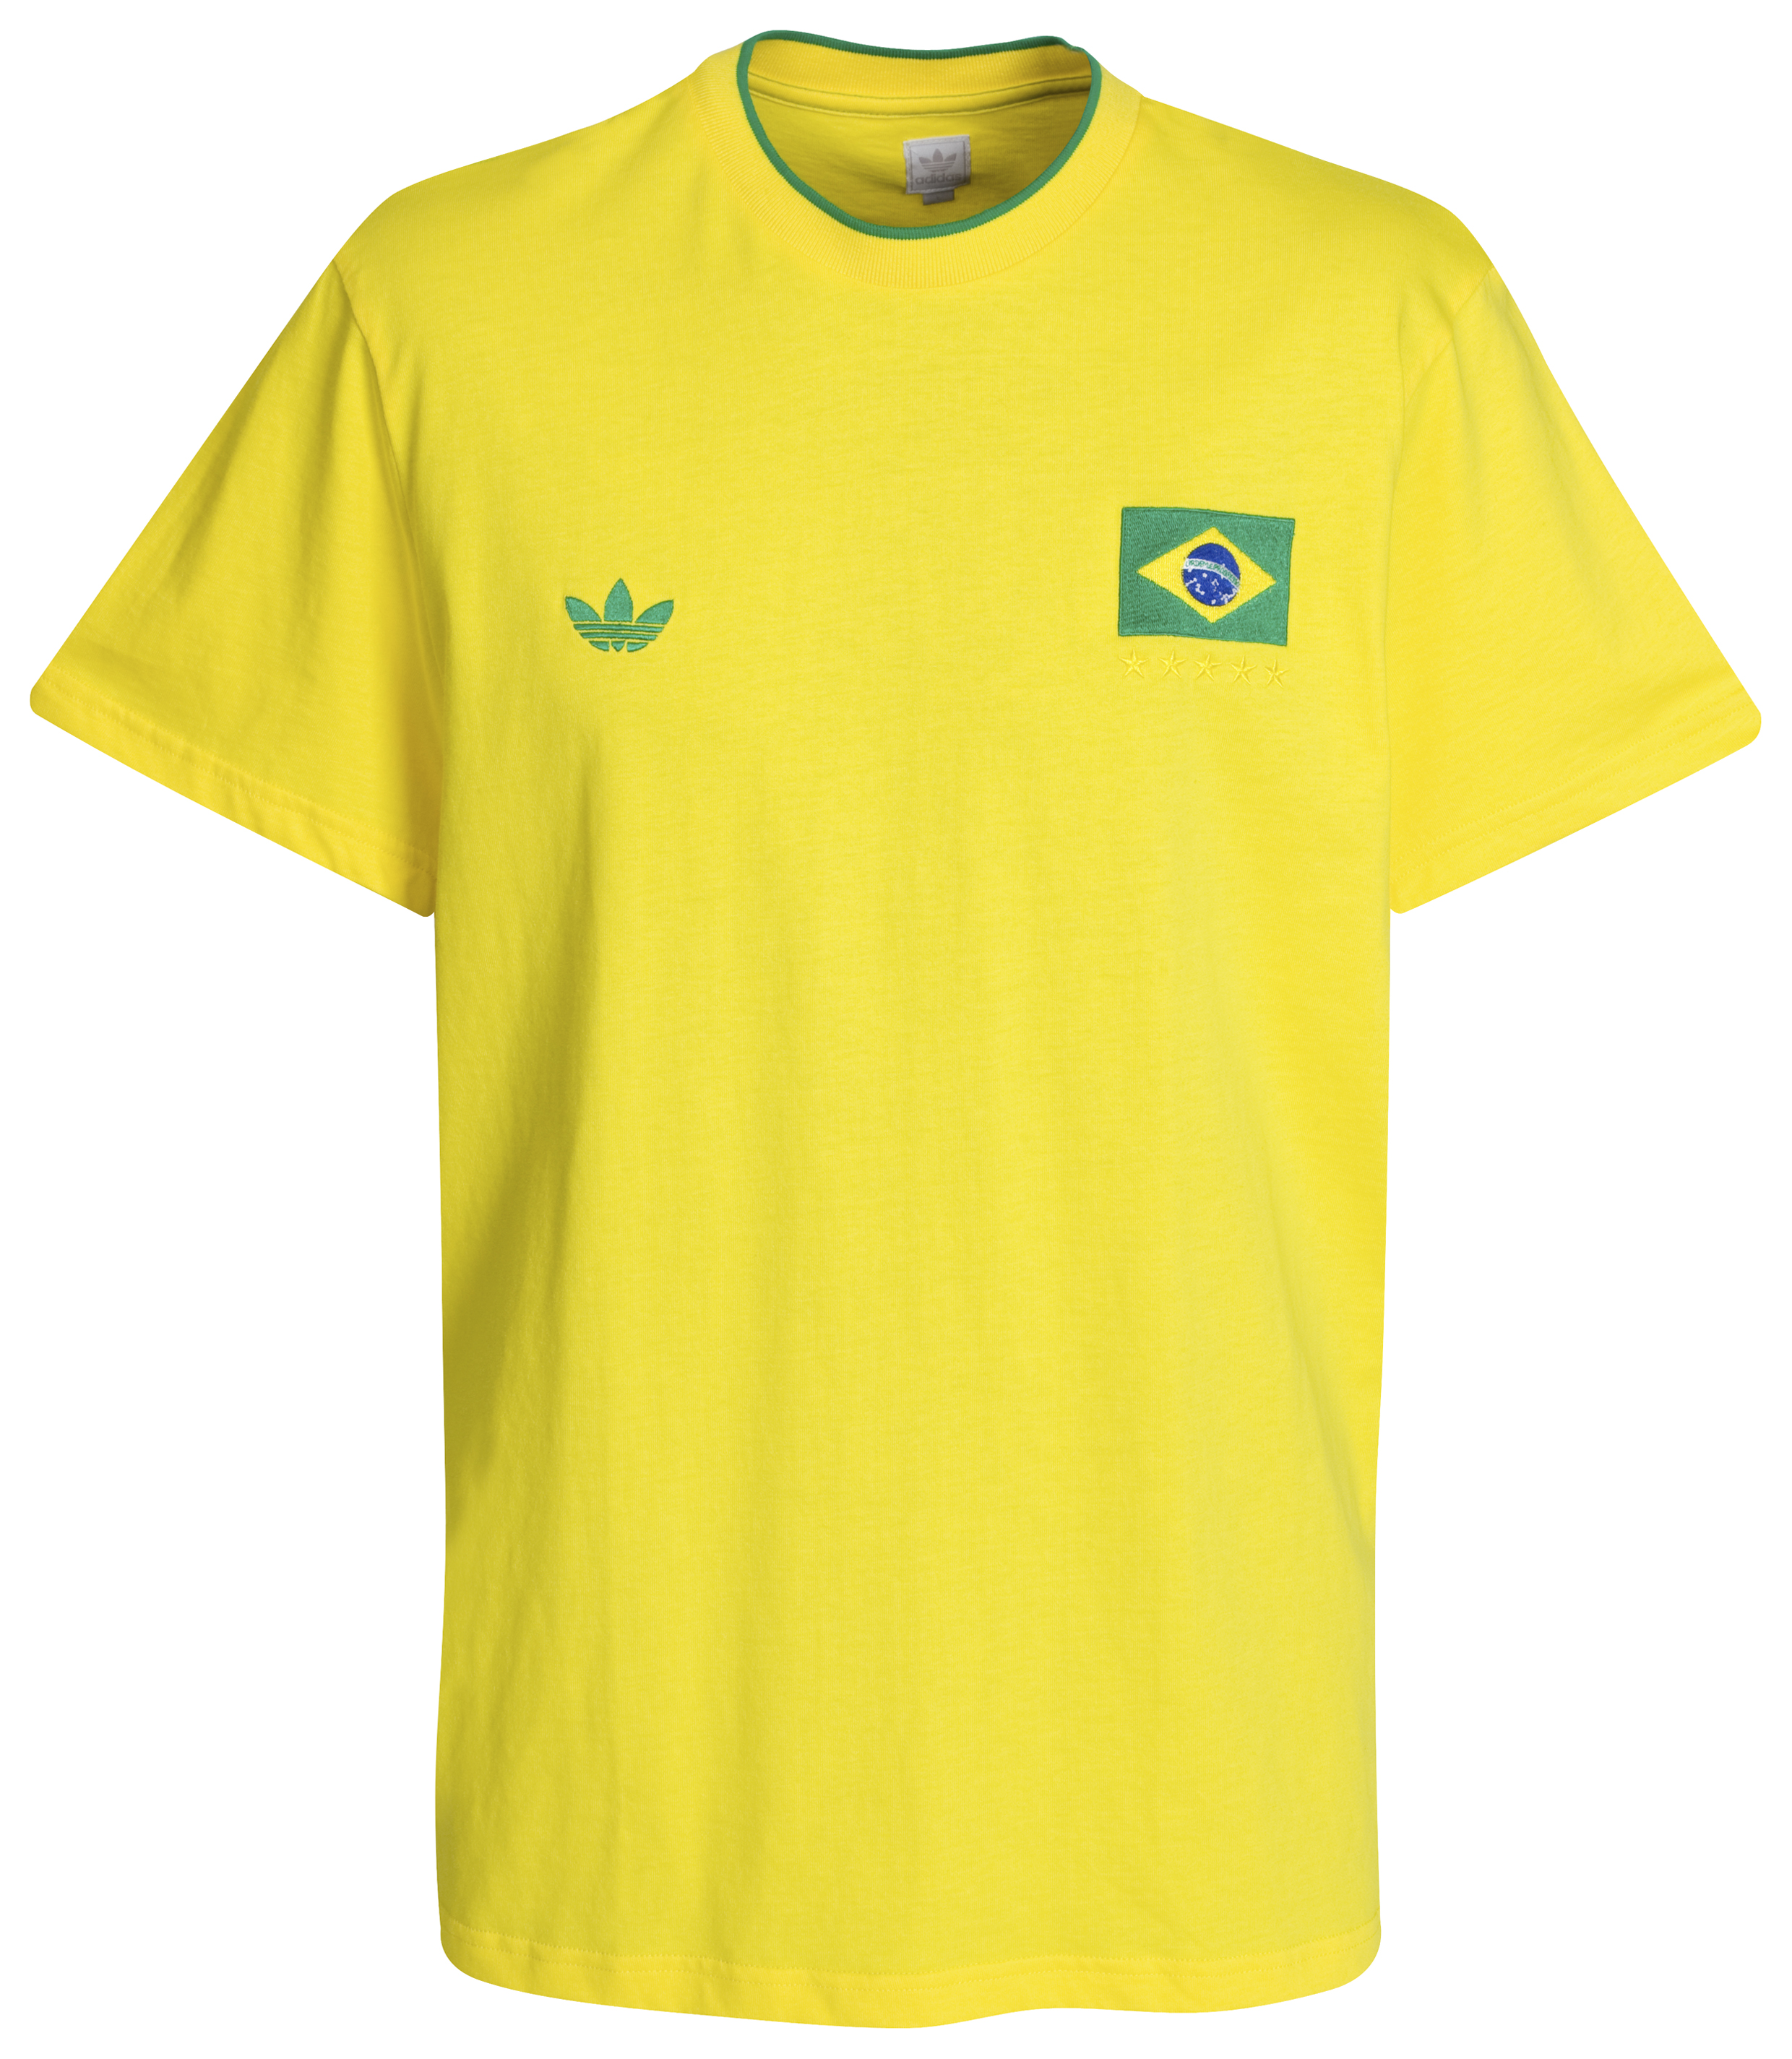 adidas Originals Brazil T Shirt Sun